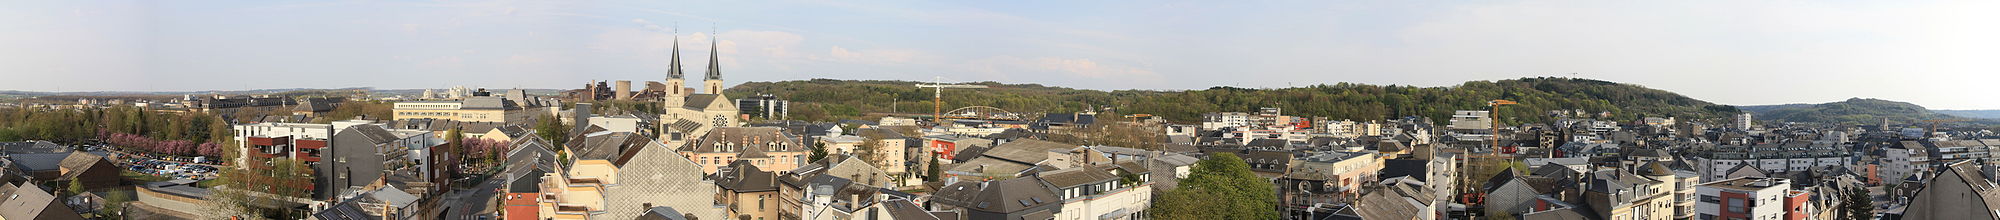 Panoramaansicht vom südlichen Teil Esch-Alzettes